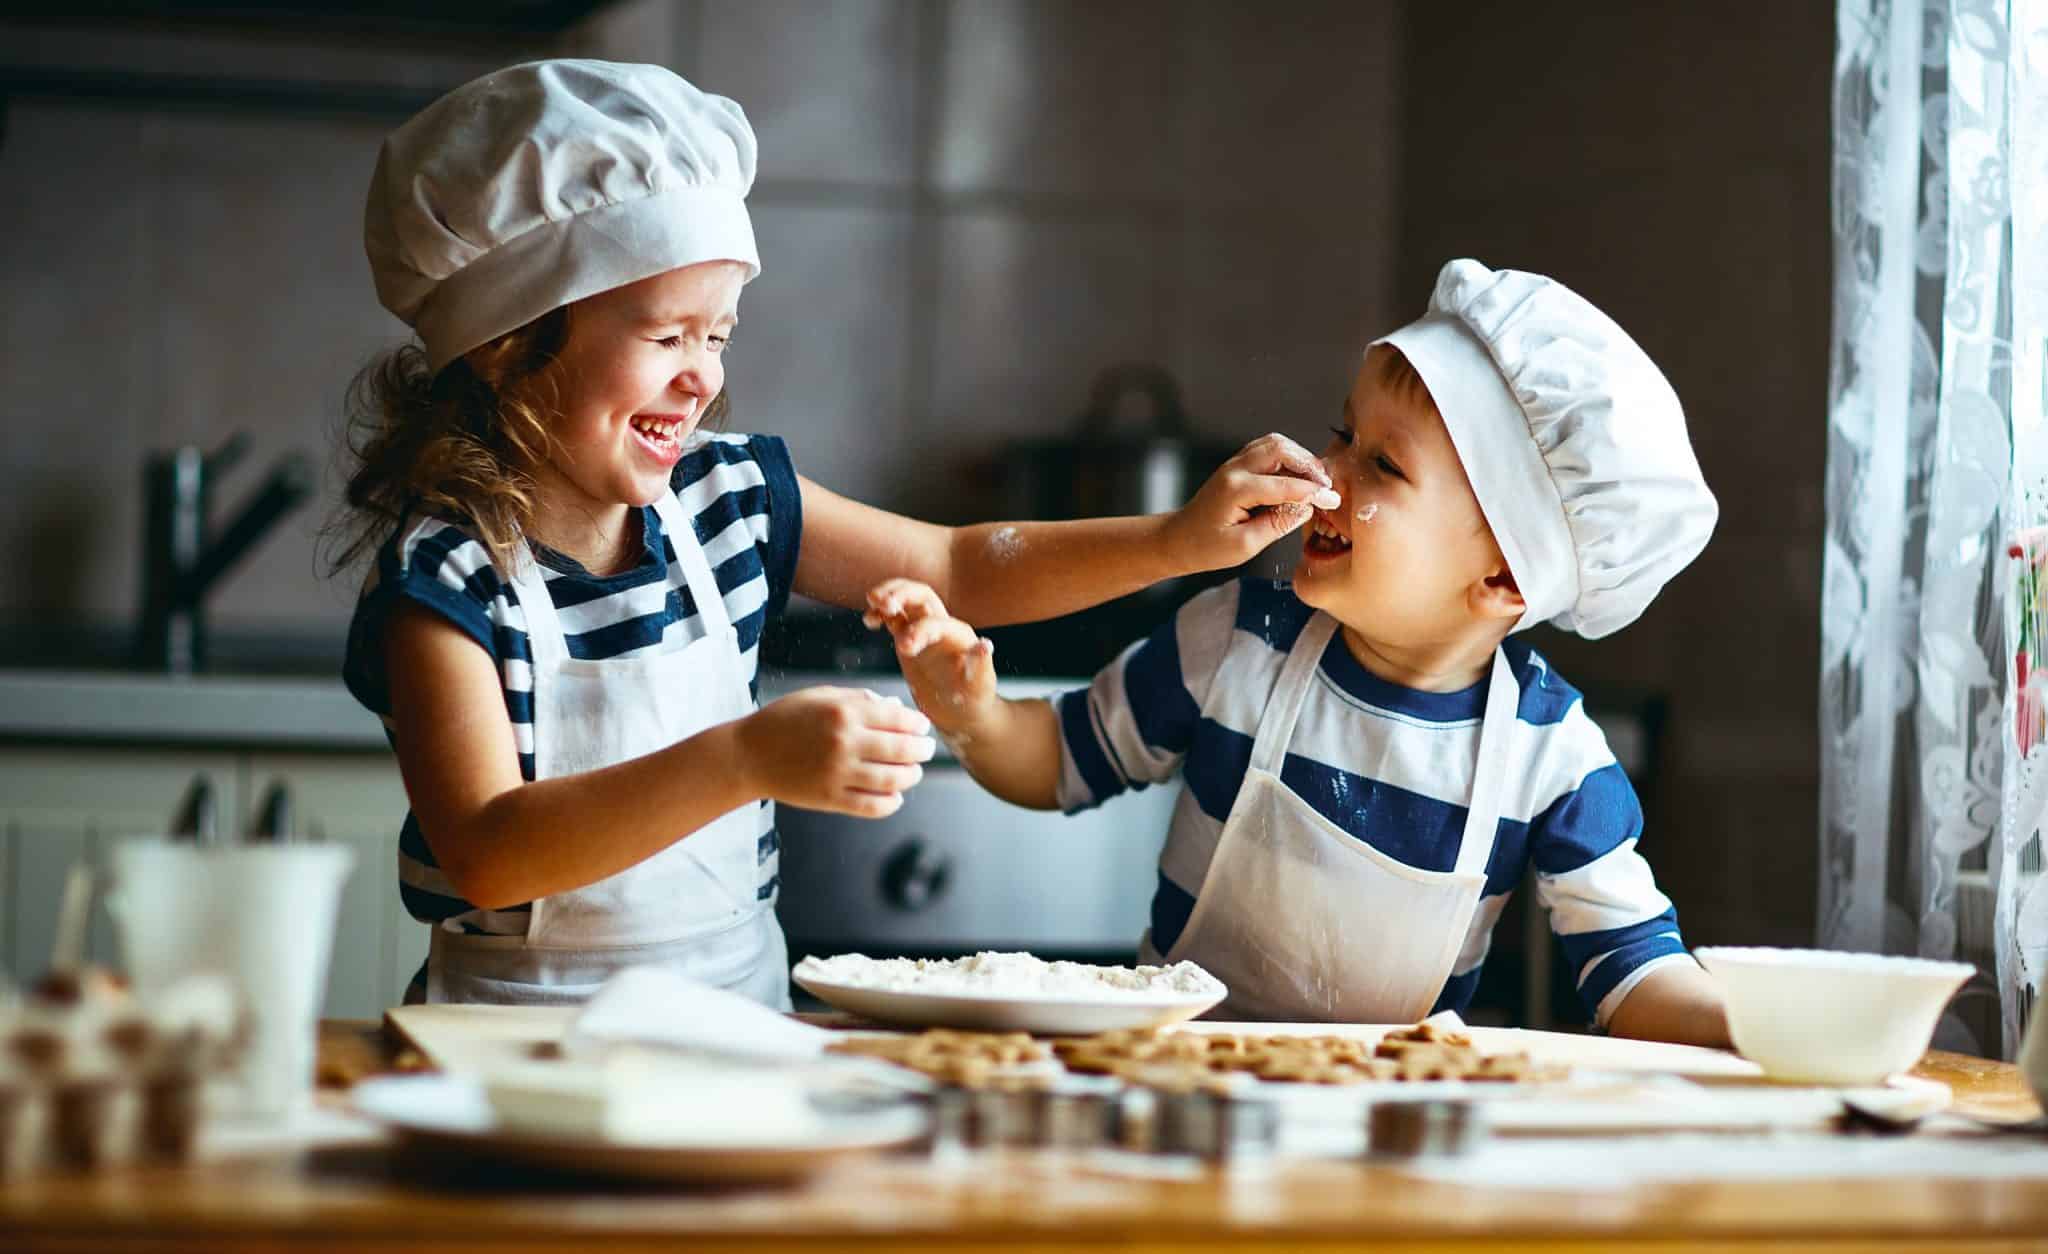 children cooking messing around in kitchen wearing chefs hats